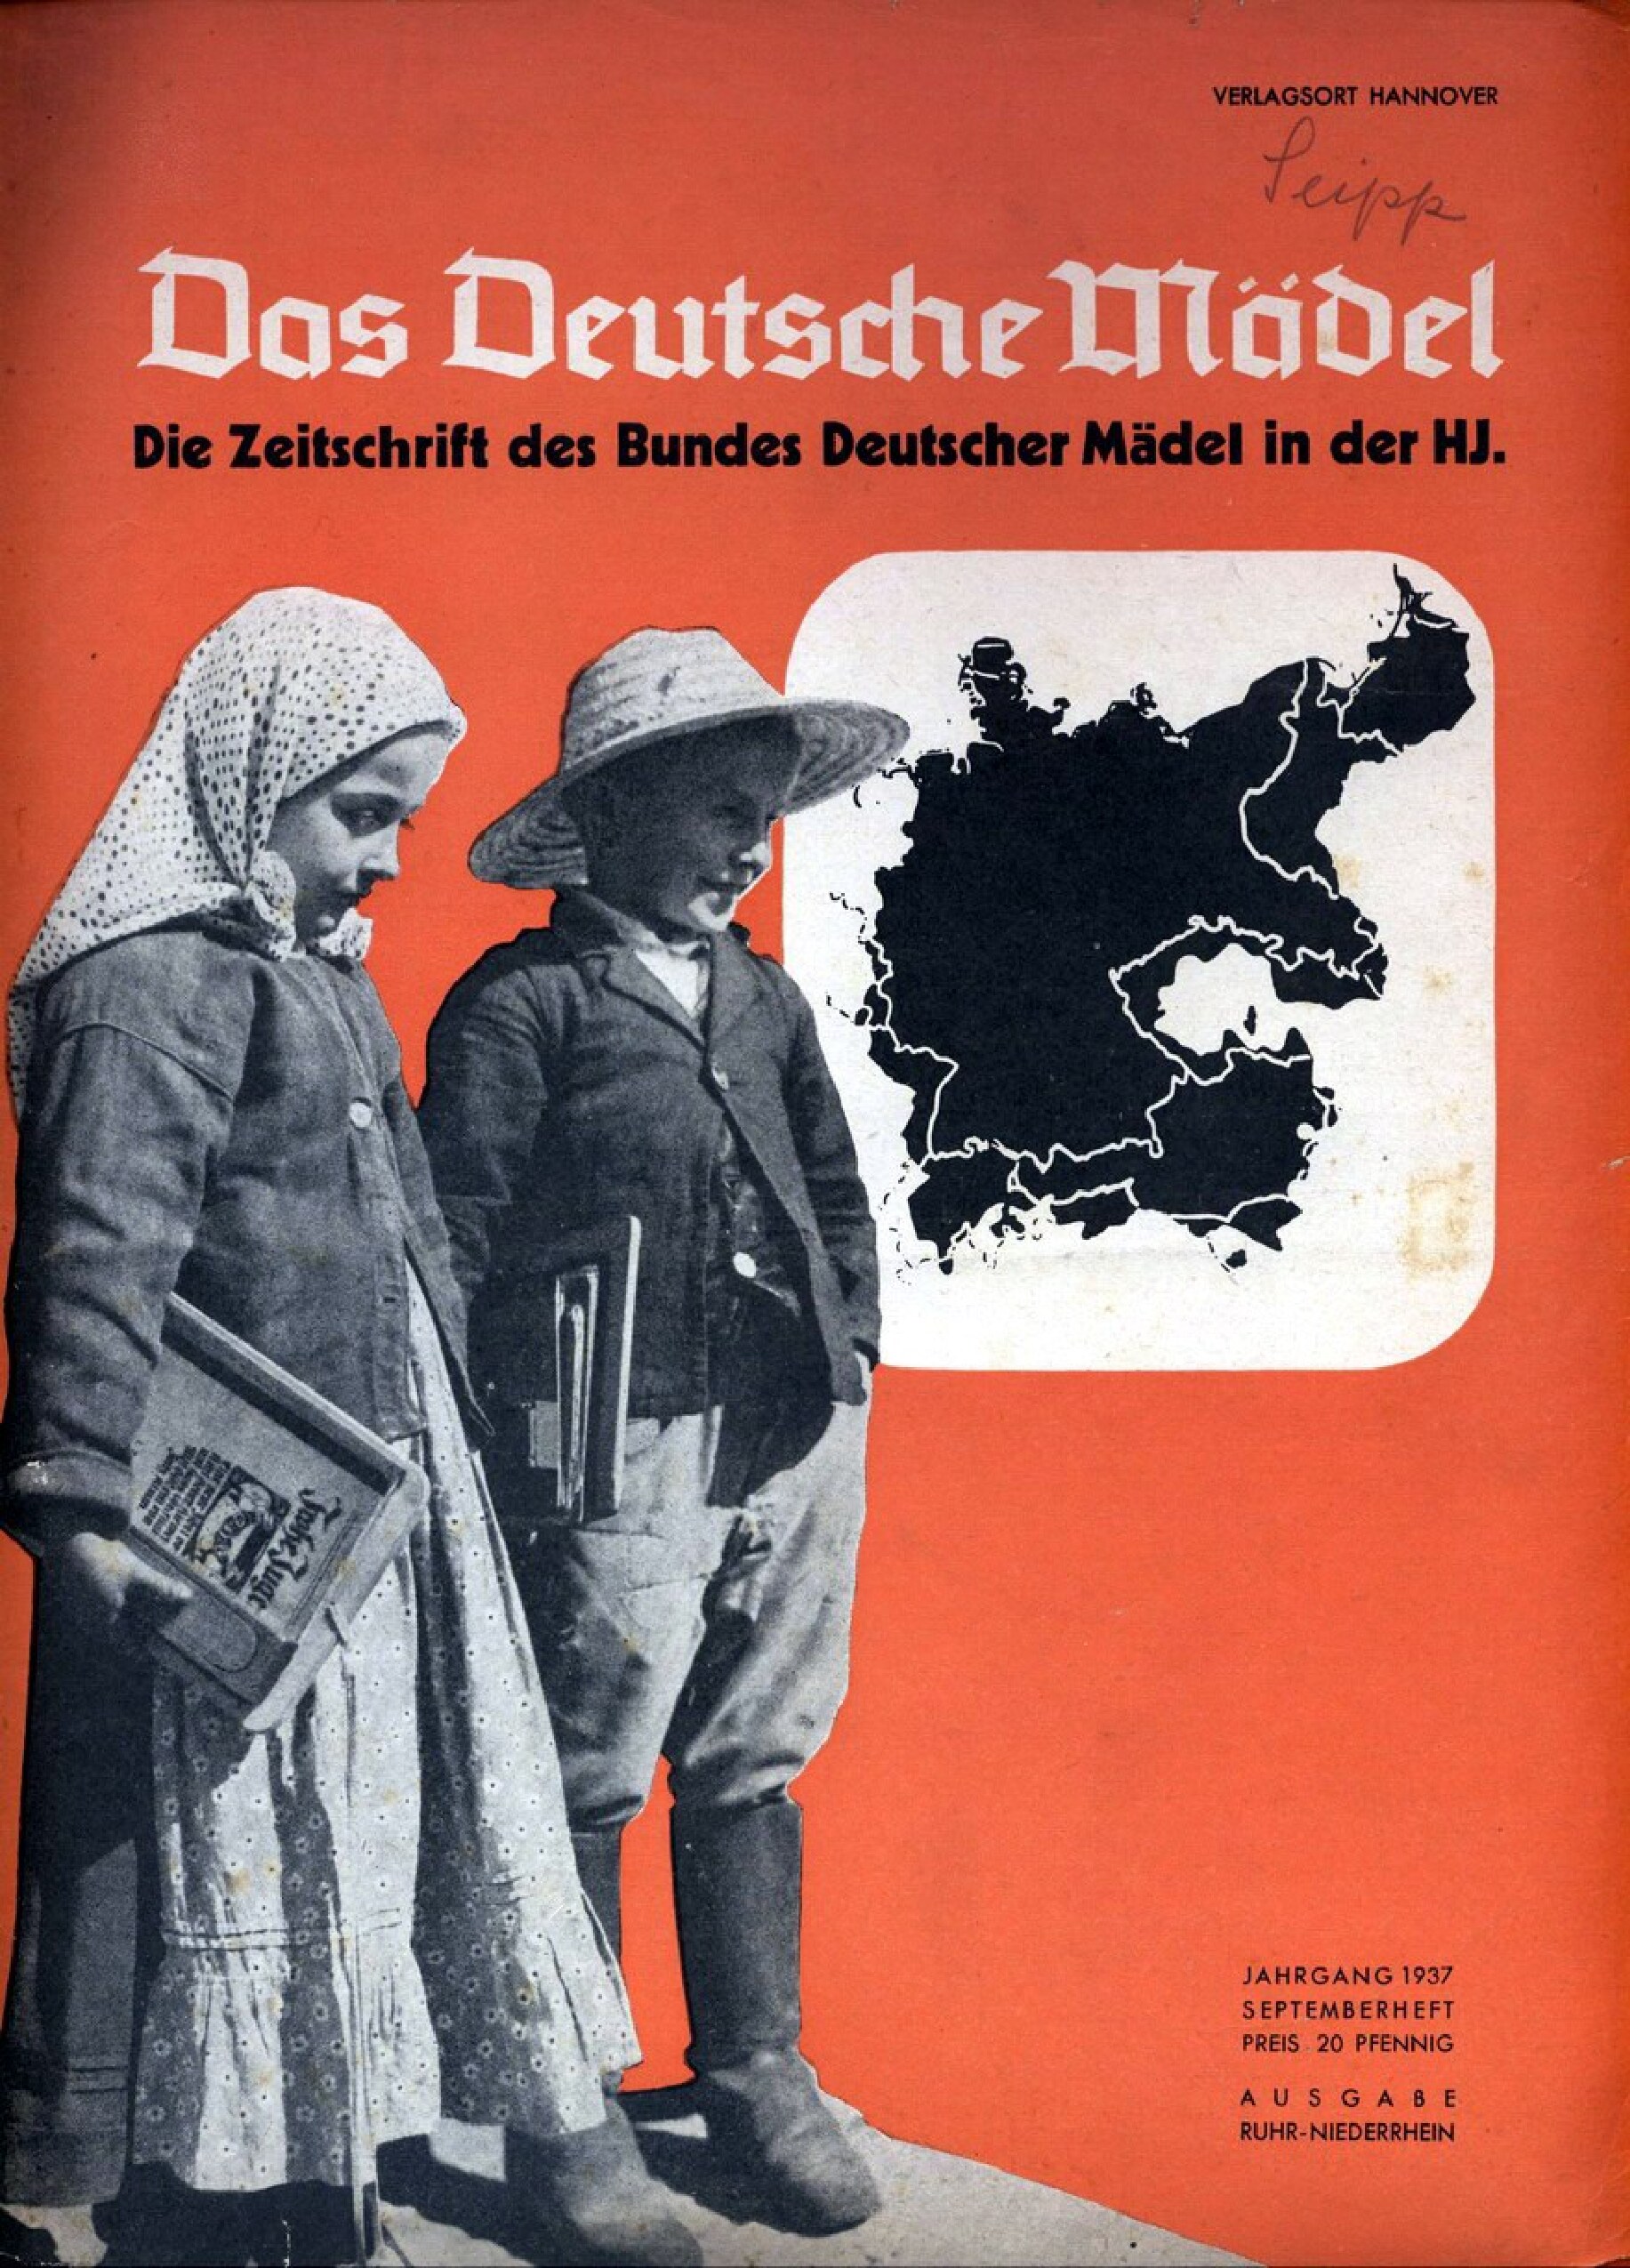 Das Deutsche Mädel - 1937 September (33 S., Scan, Fraktur)